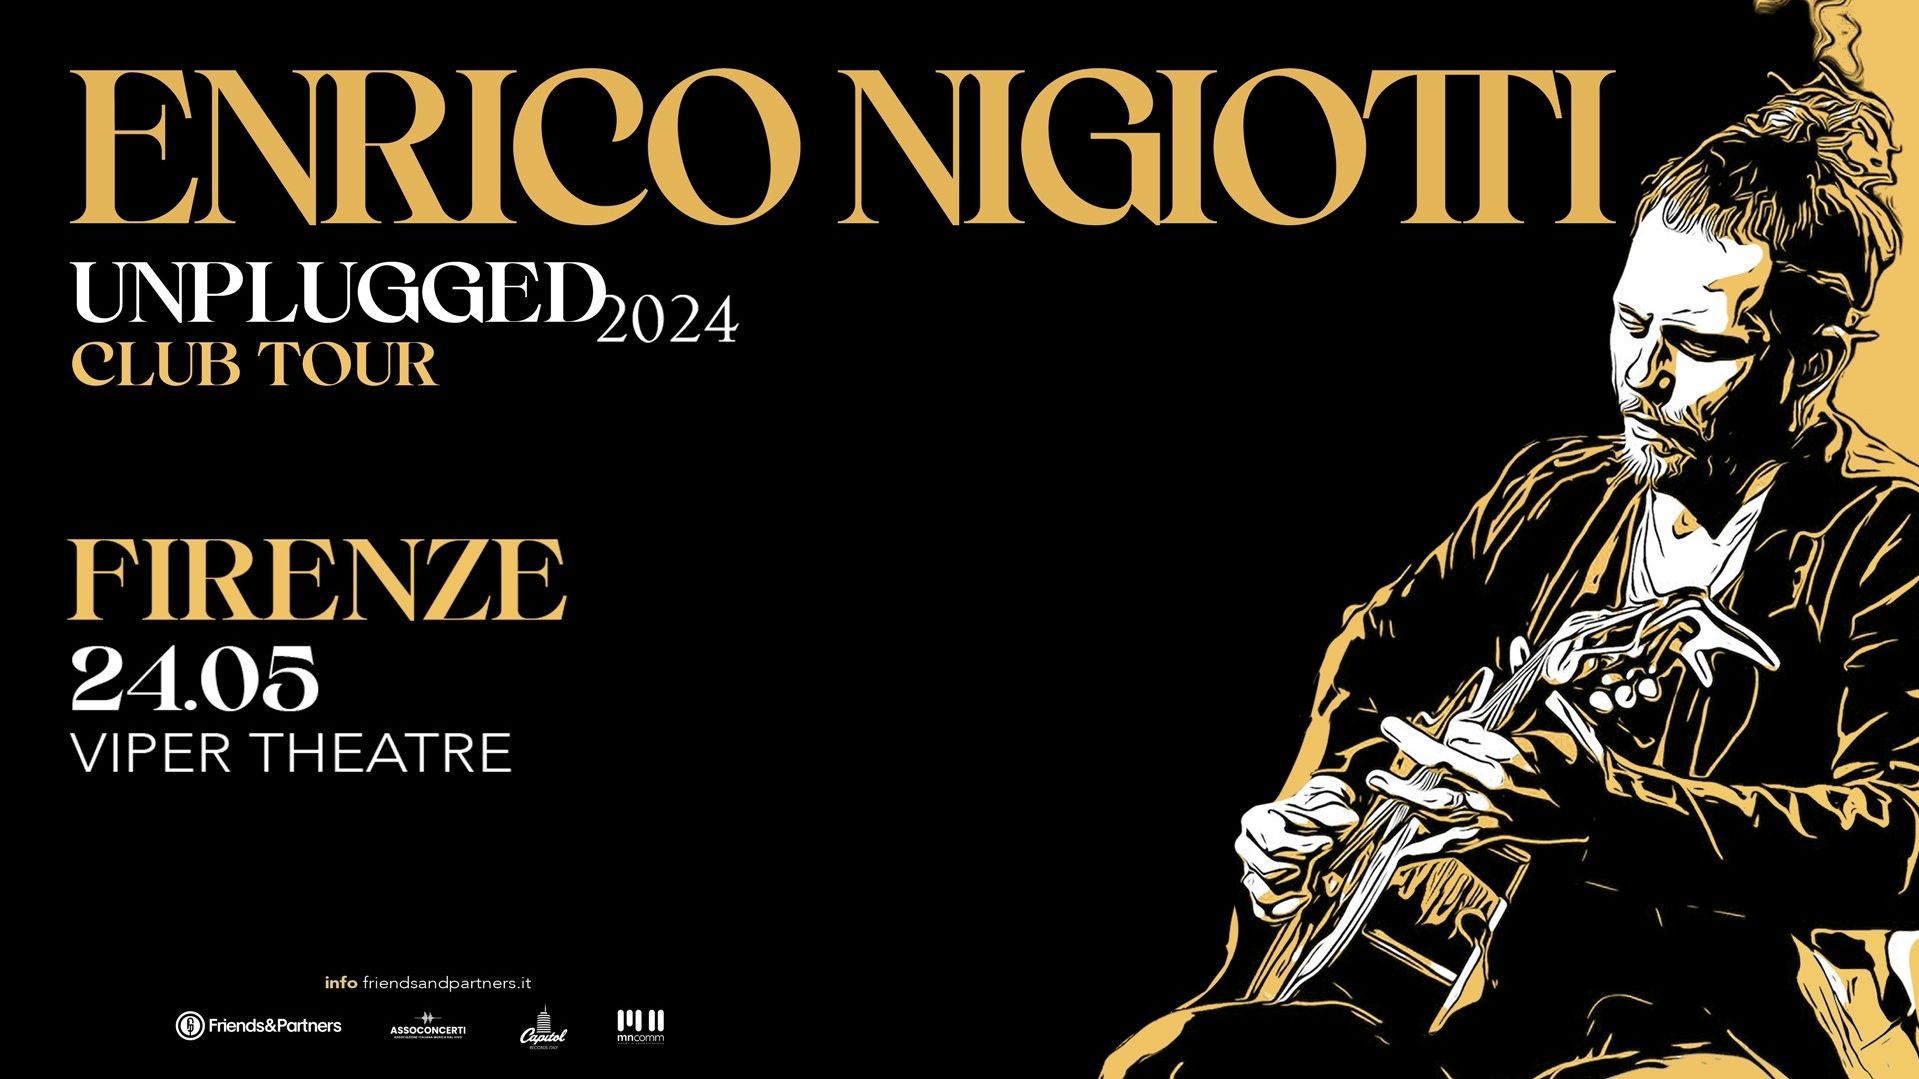 Enrico Nigiotti "Unplugged Club Tour"